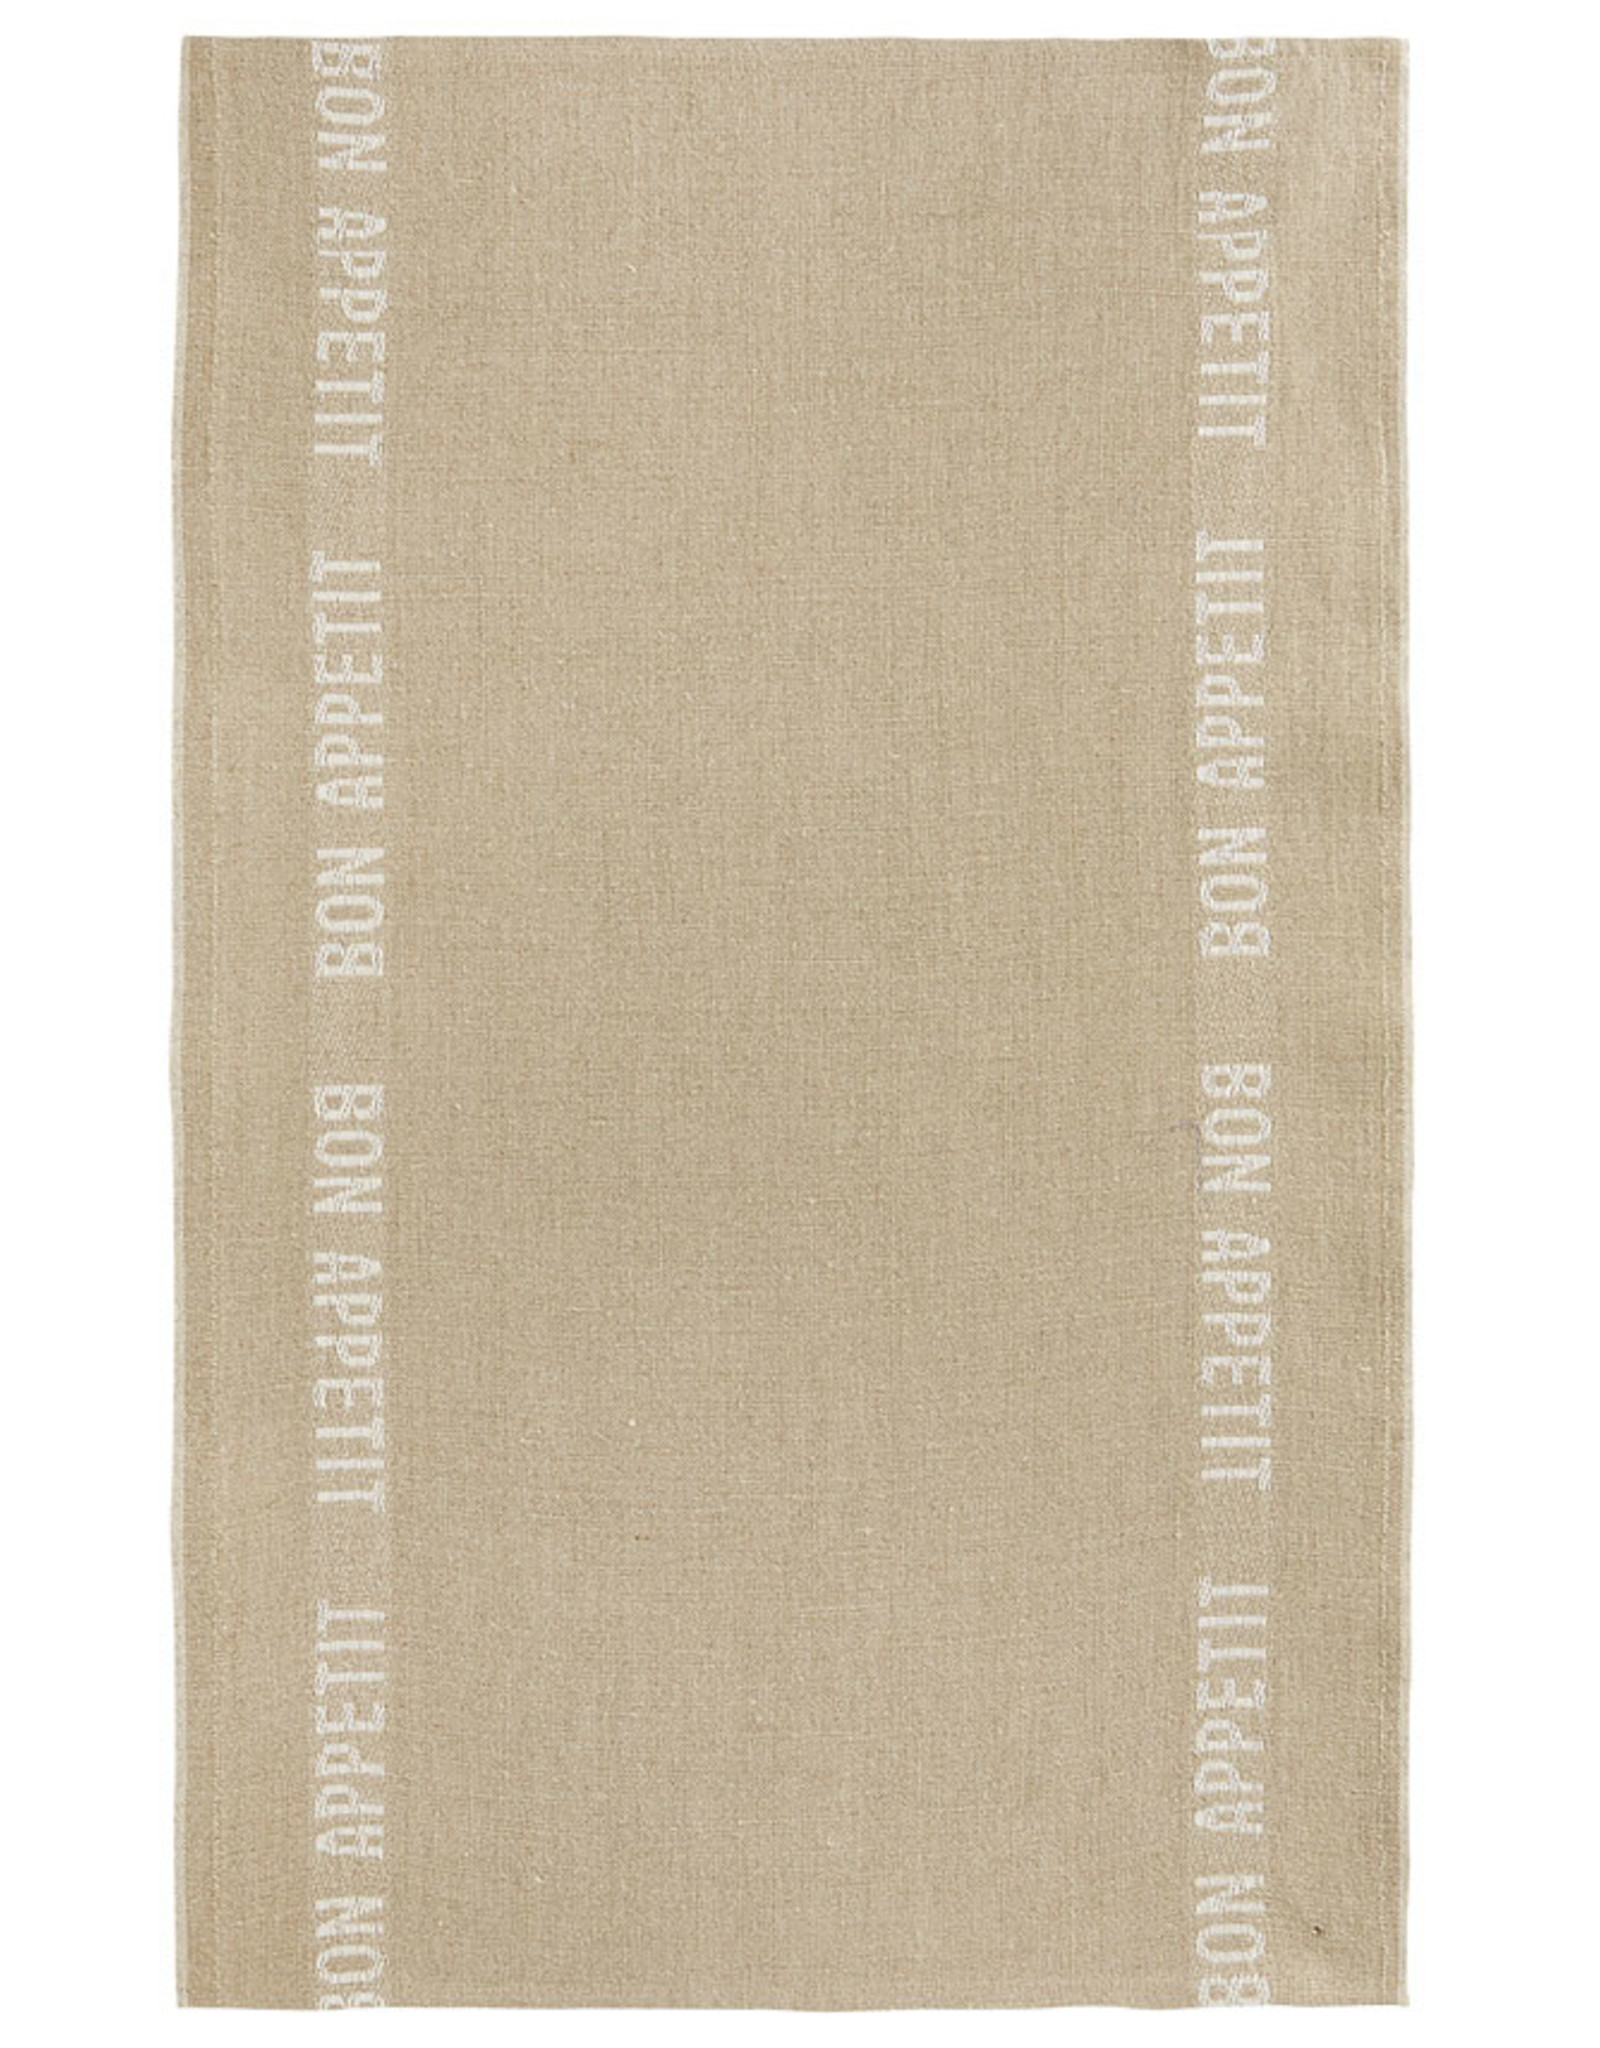 BON APPETIT Natural with White Letters Linen Tea Towel